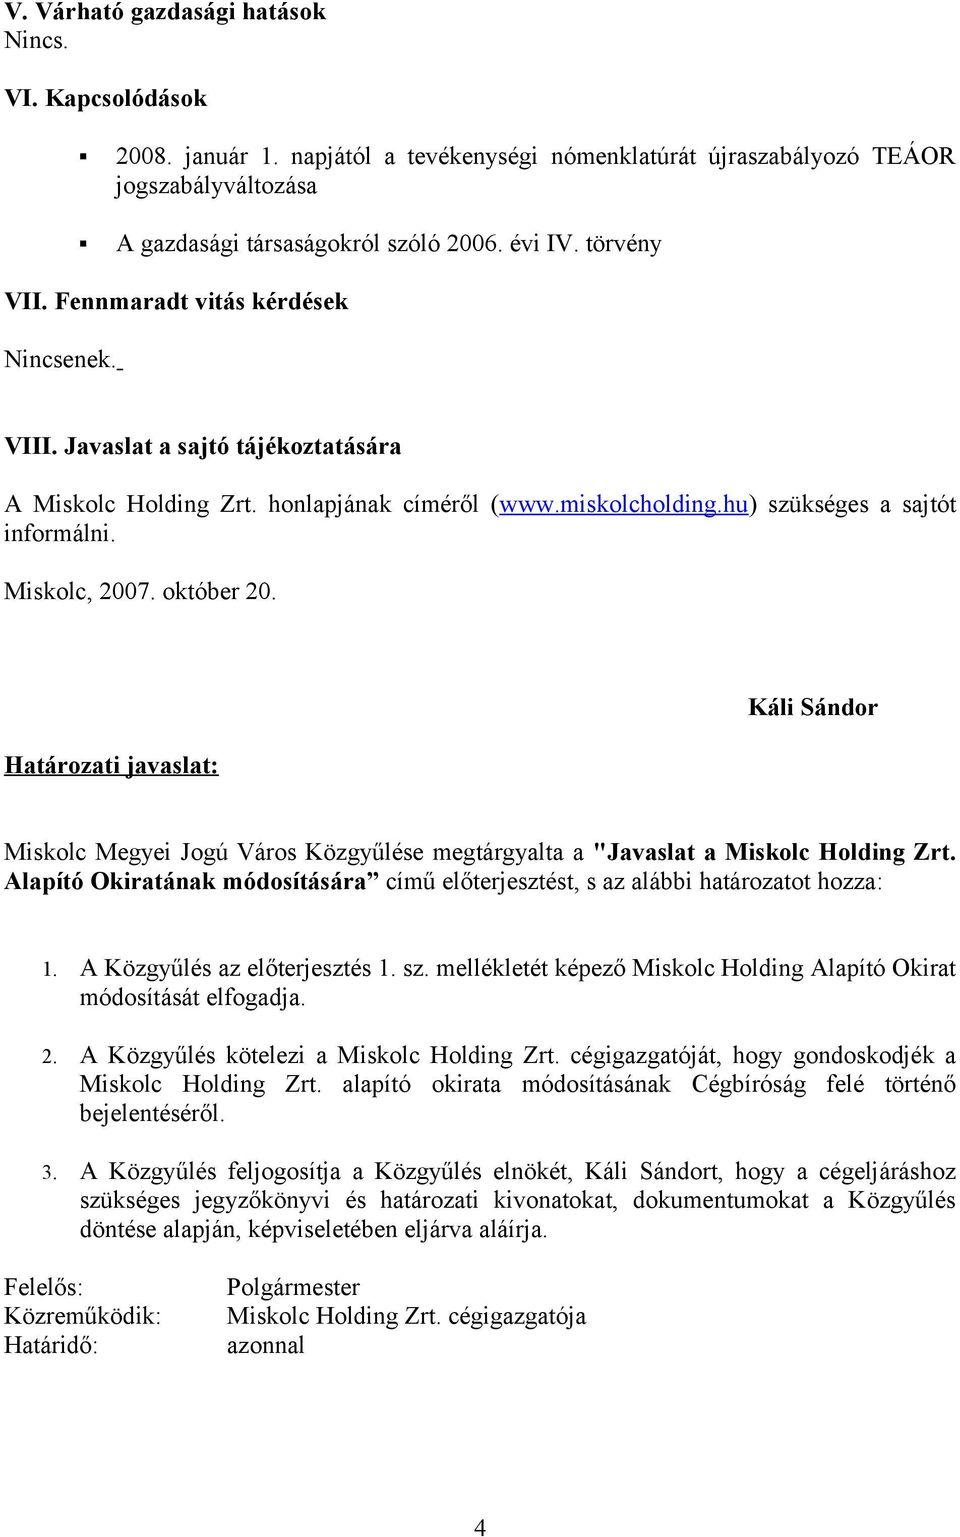 Miskolc, 2007. október 20. Határozati javaslat: Káli Sándor Miskolc Megyei Jogú Város Közgyűlése megtárgyalta a "Javaslat a Miskolc Holding Zrt.